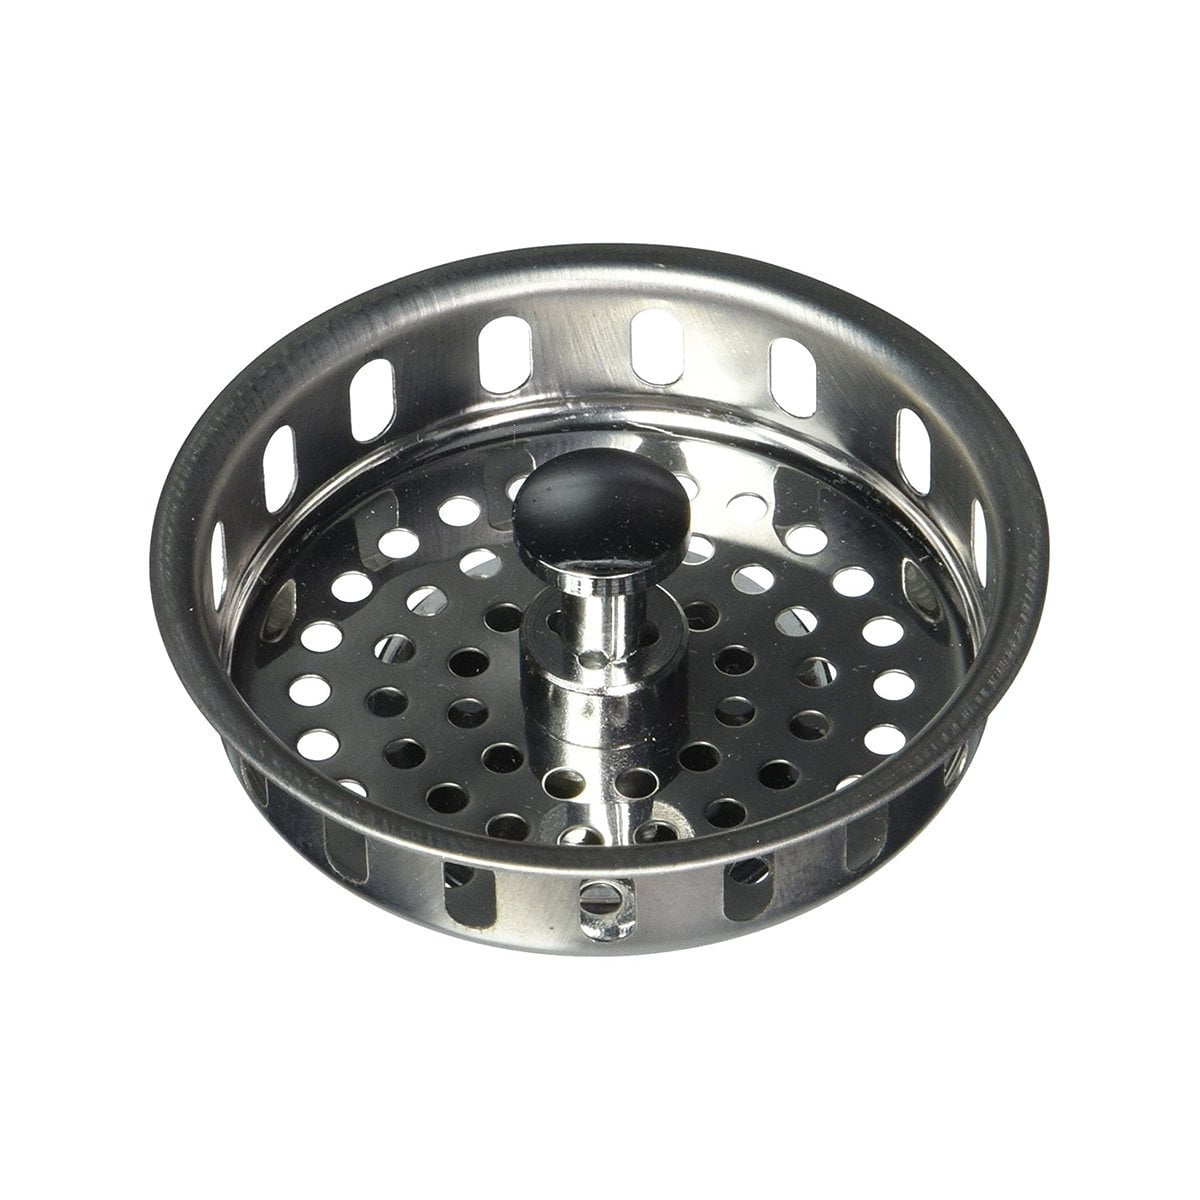 Highcraft Kitchen Sink Basket Strainer